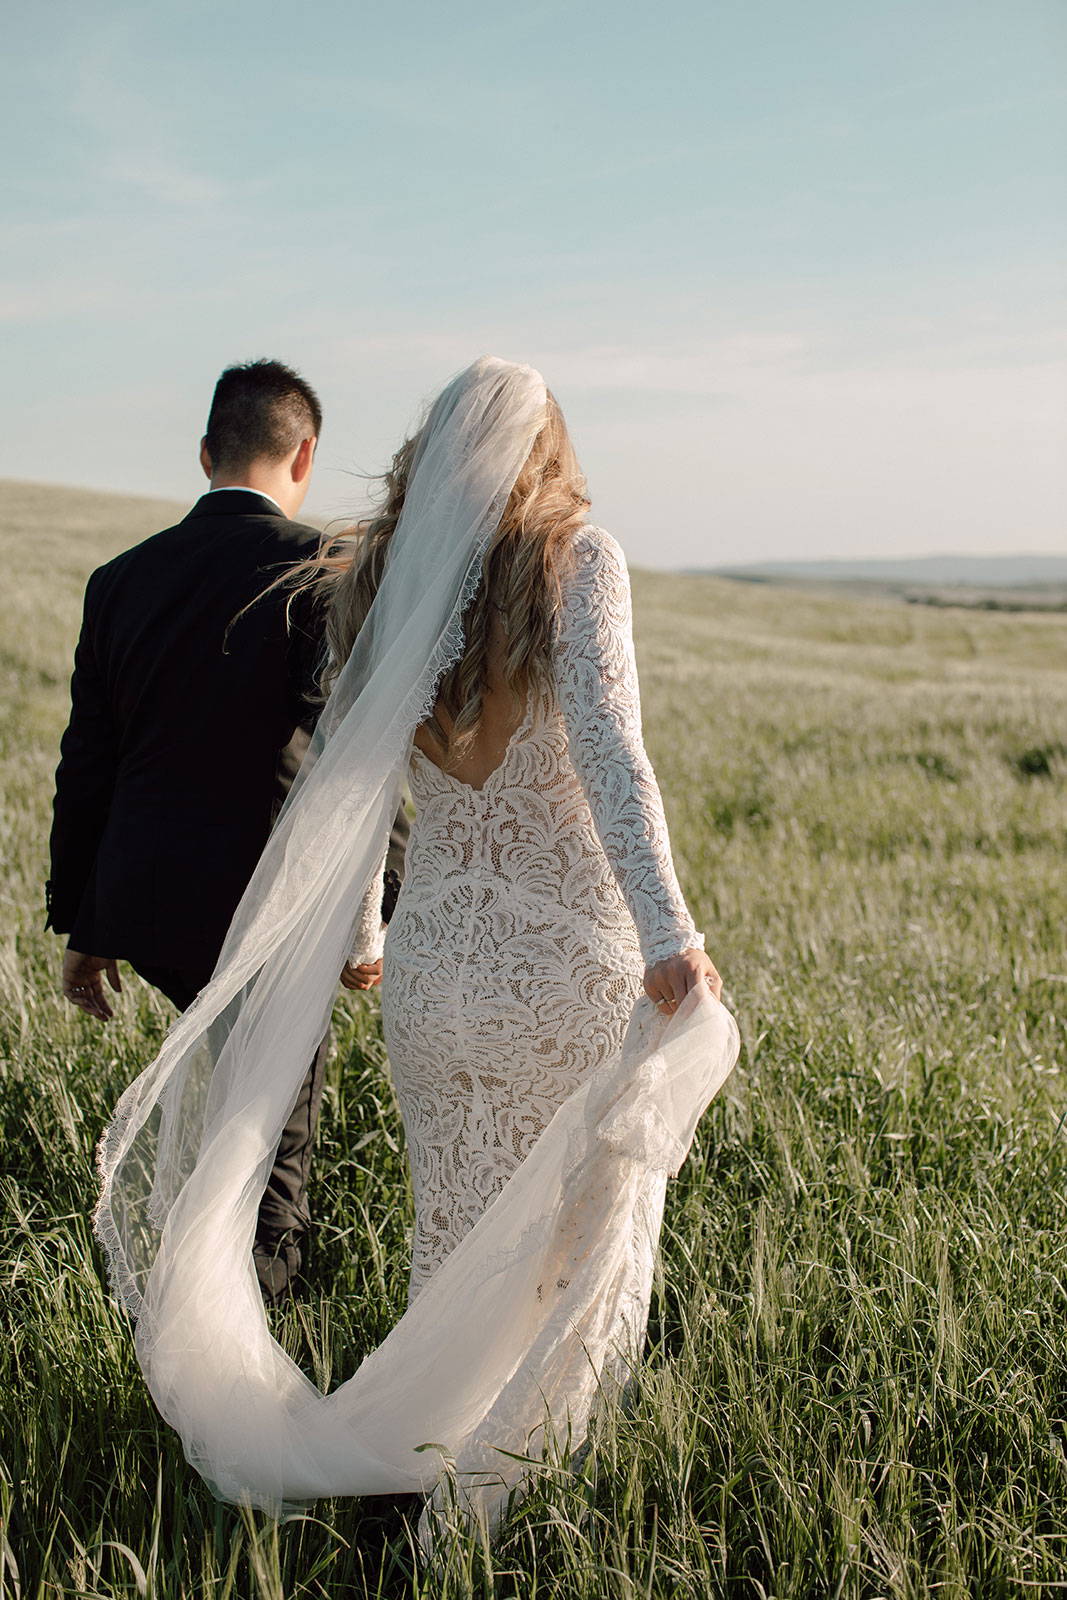 Bride and Groom walking in field